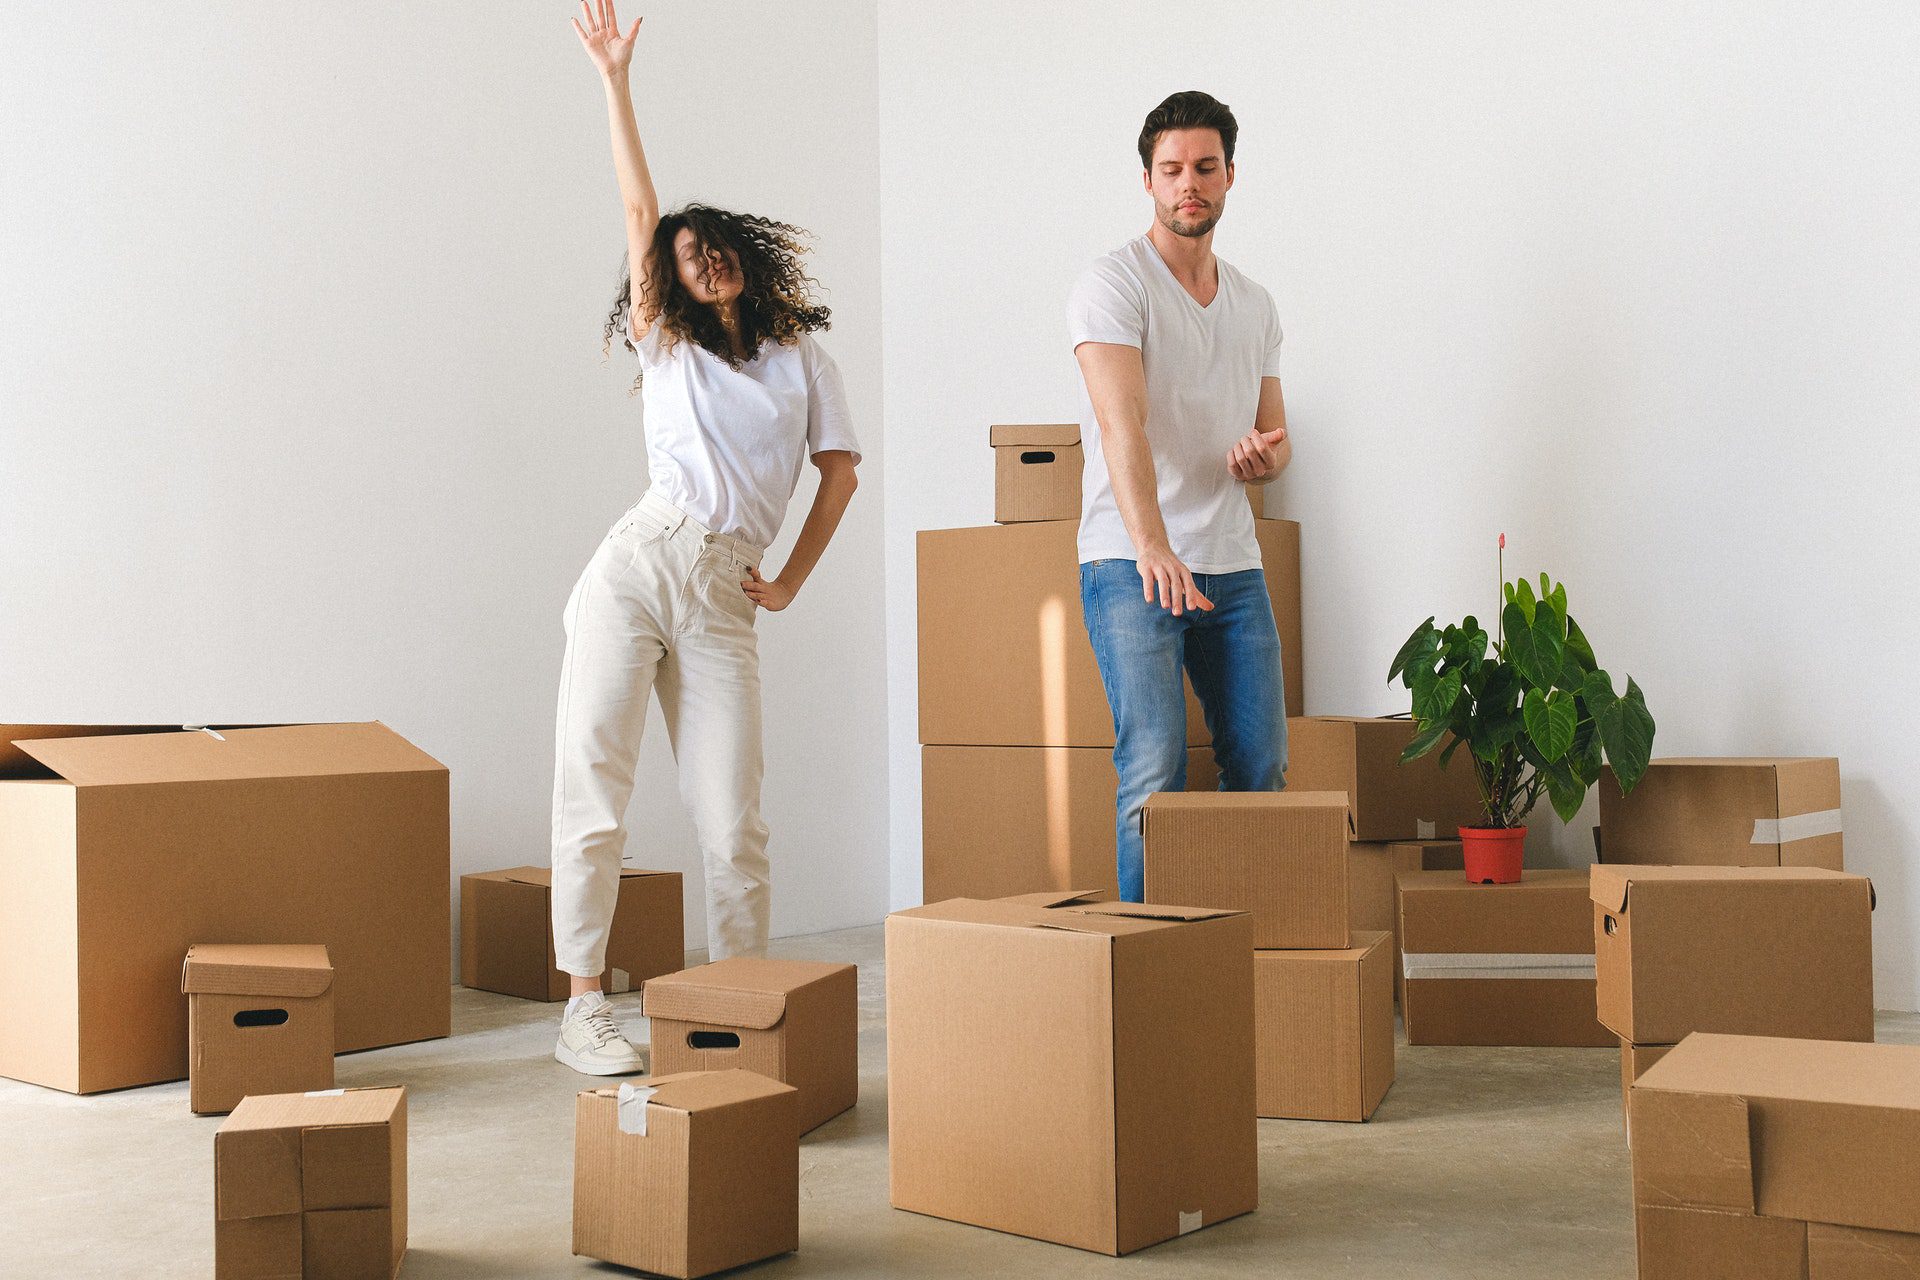 Óptima Inmobiliaria: ¡5 razones para Comprar un Departamento ya!